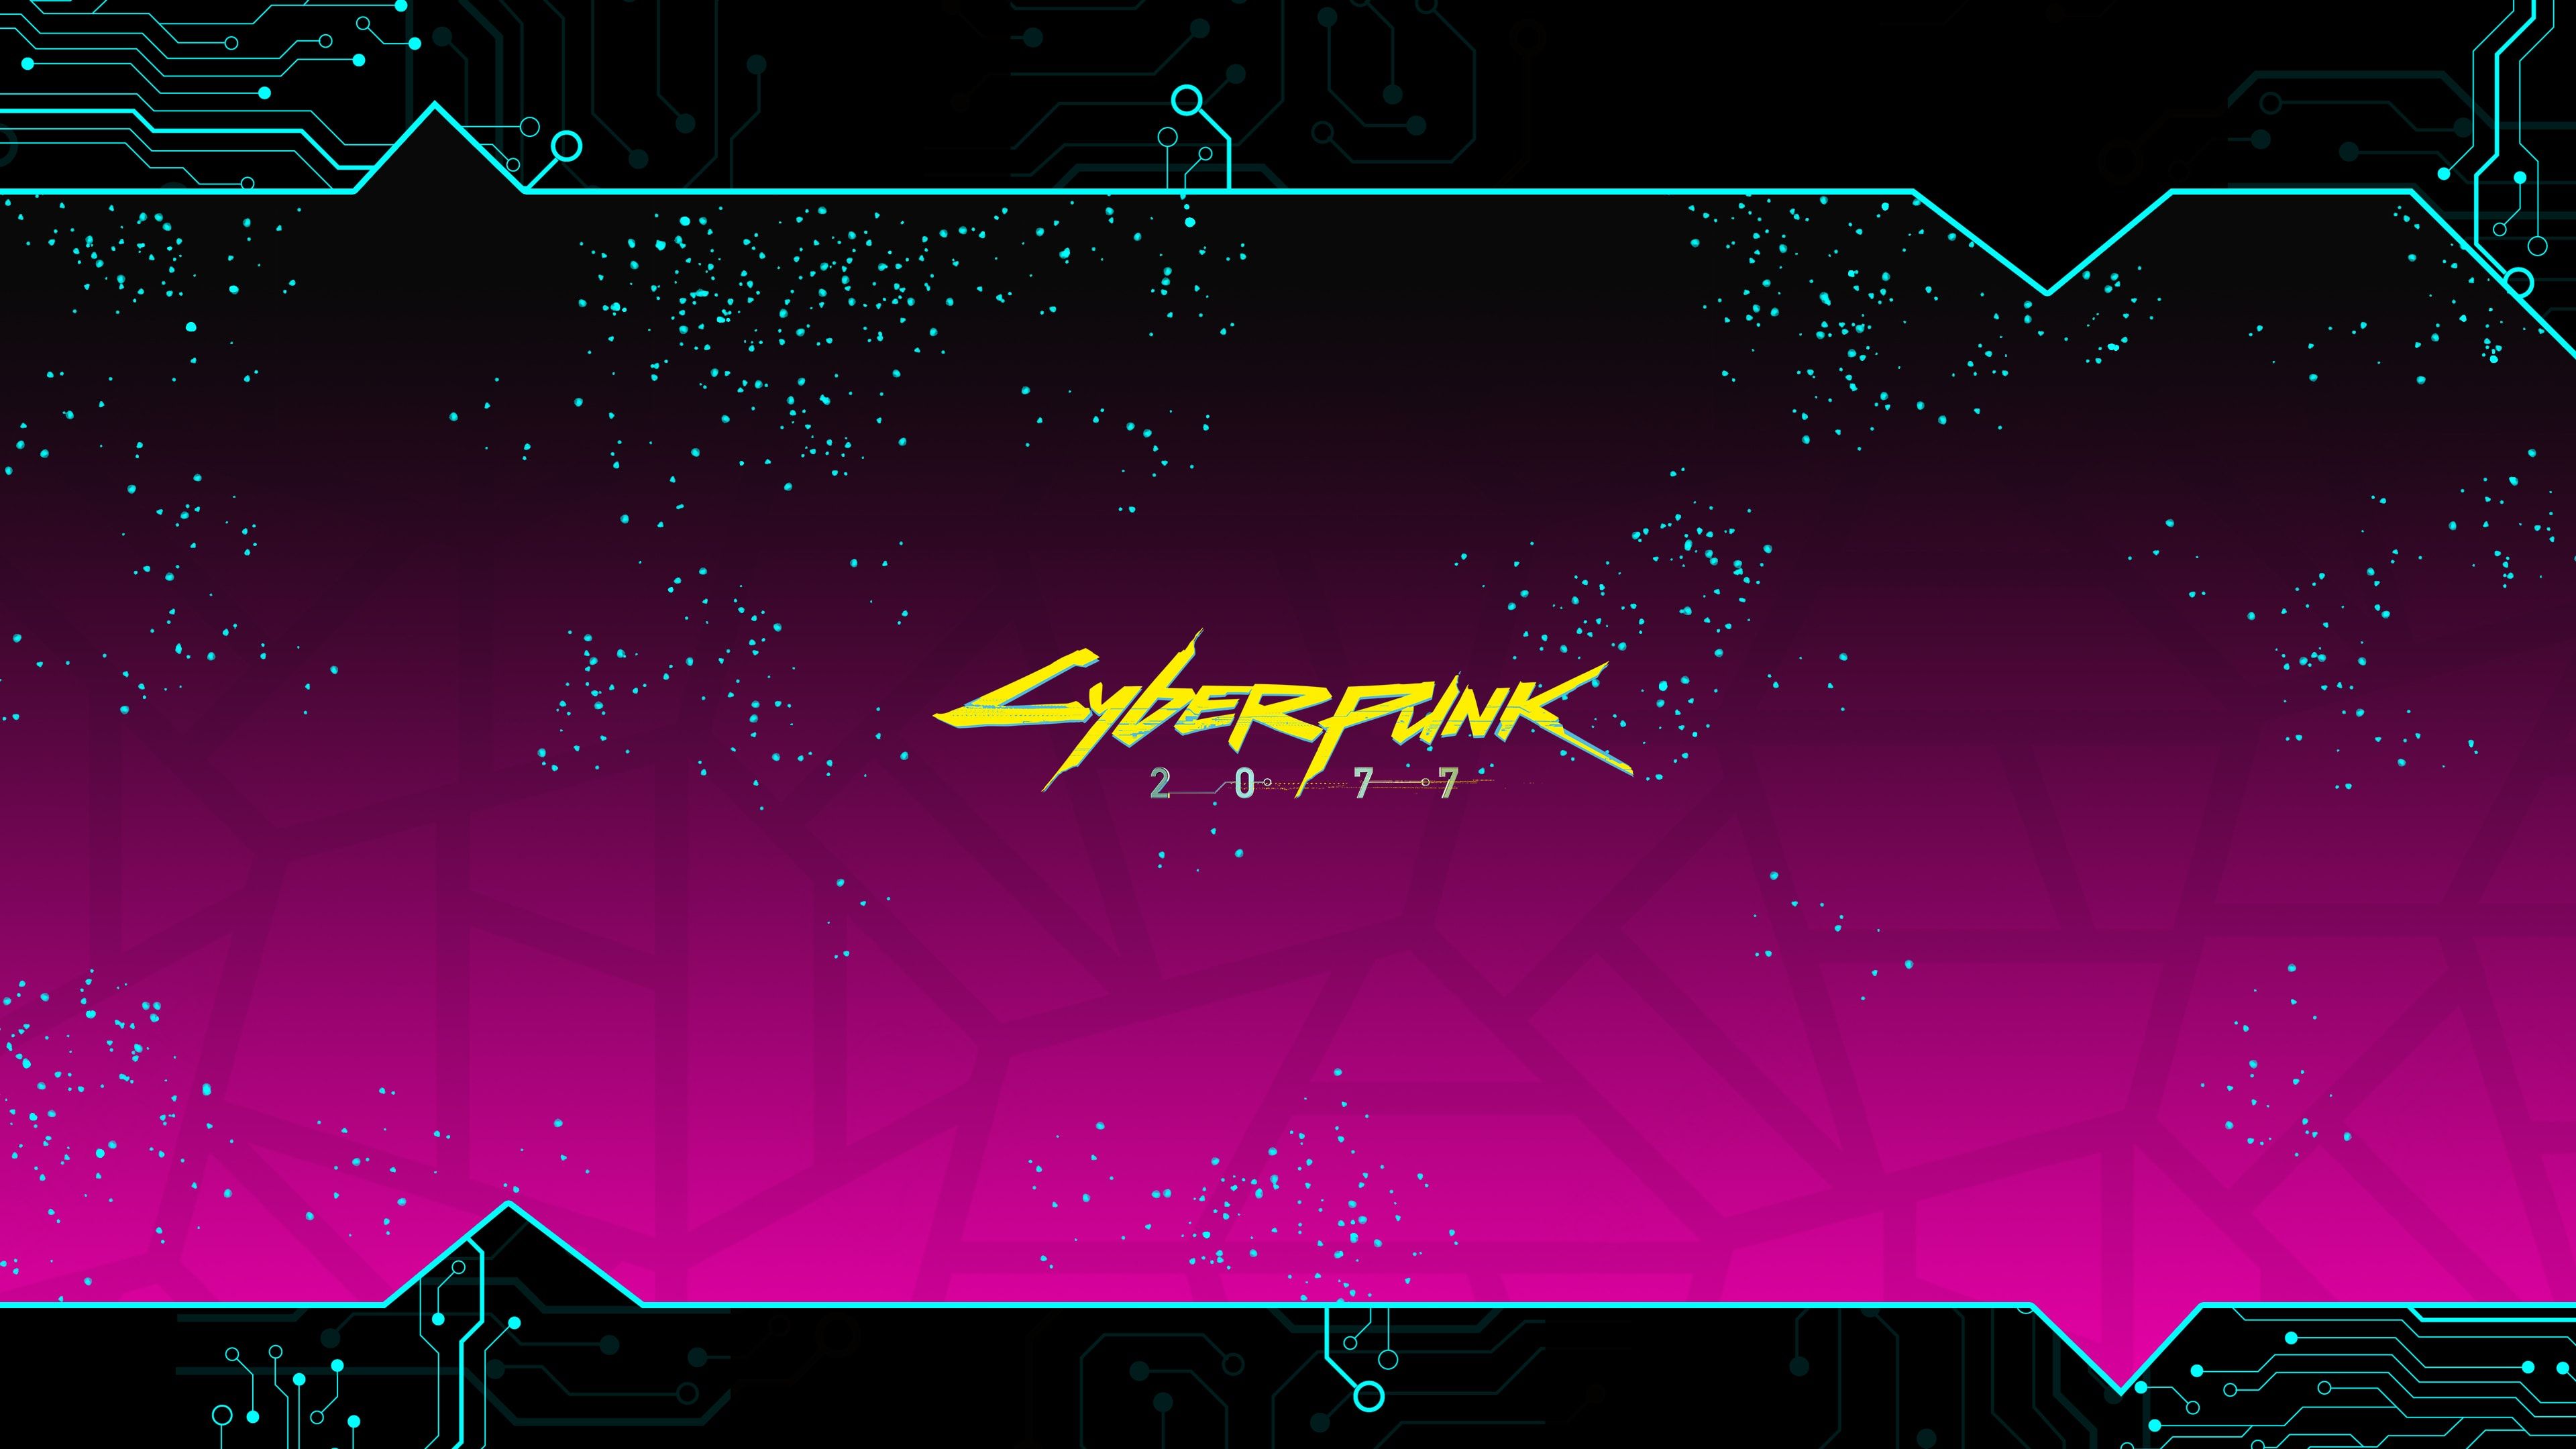 Cyberpunk 2077 Minimalist 4K Wallpaper #3.1545